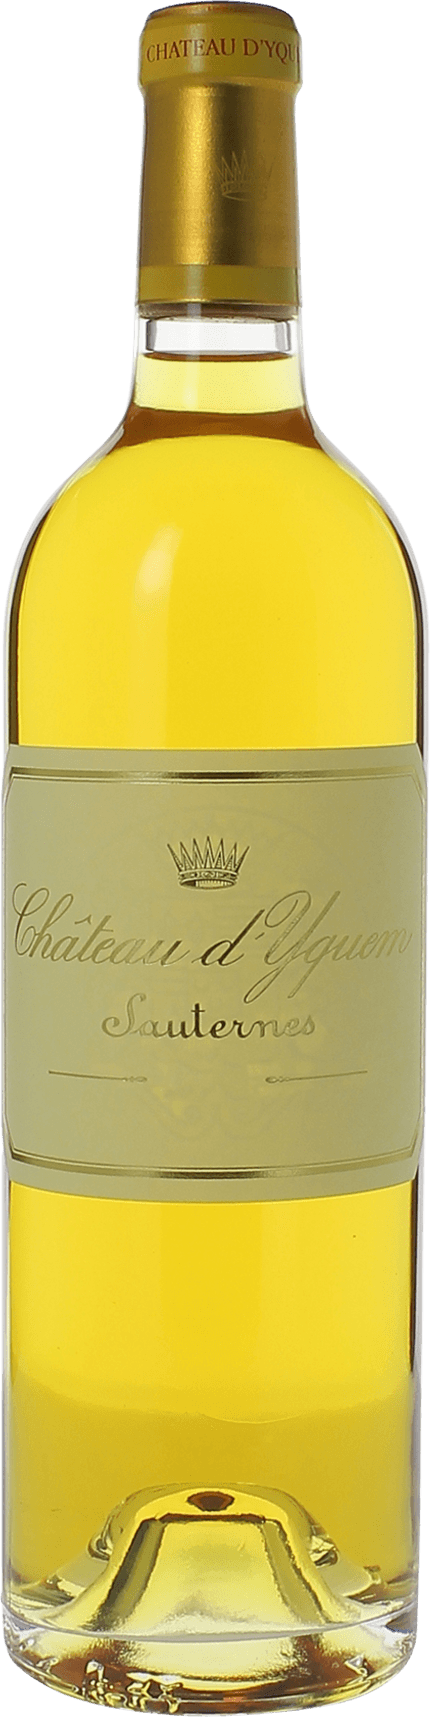 Yquem 1928 1er Grand cru class Sauternes, Bordeaux blanc